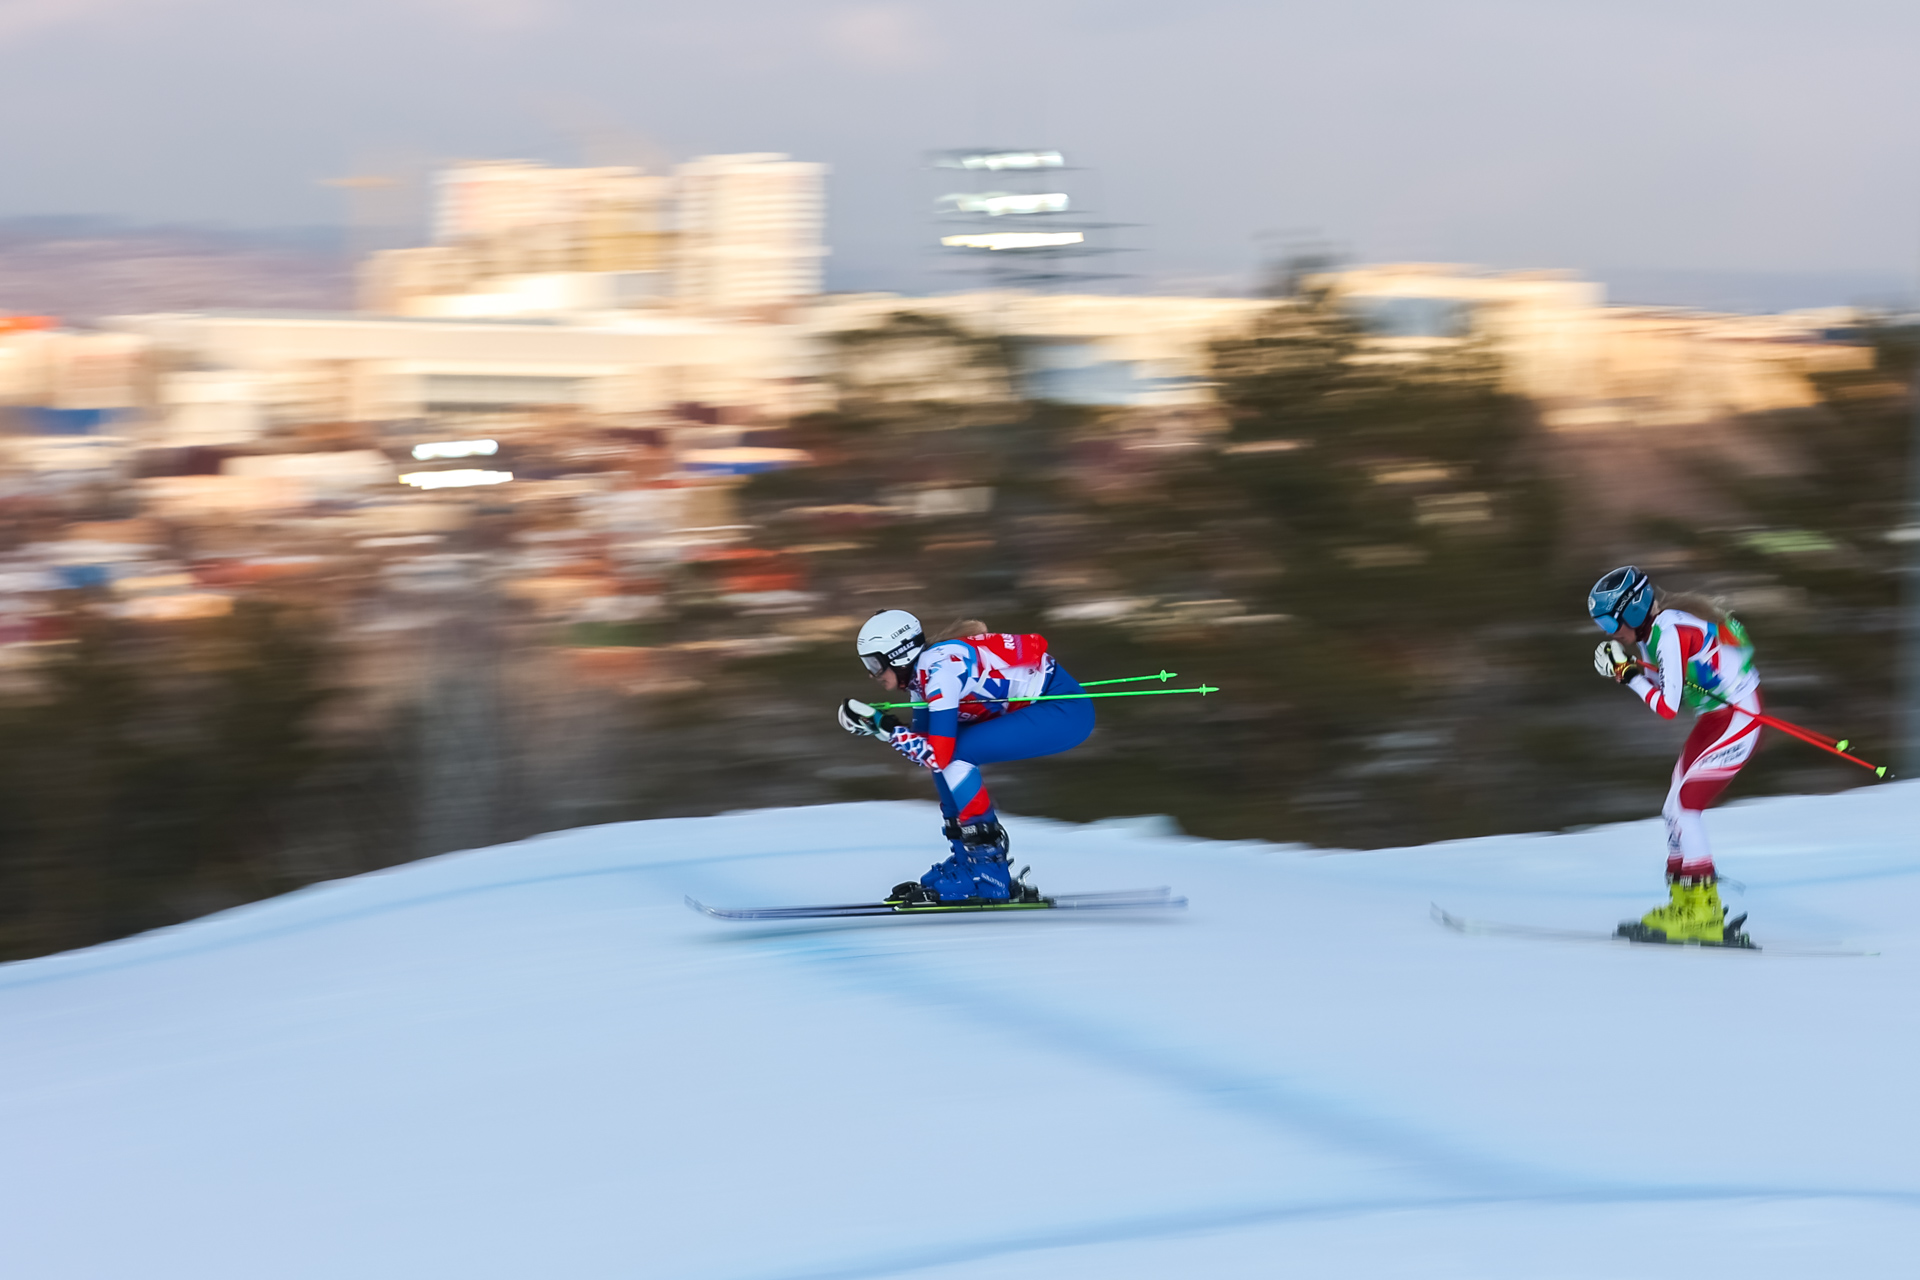 Спортсмены соревновались в скорости на снежных склонах